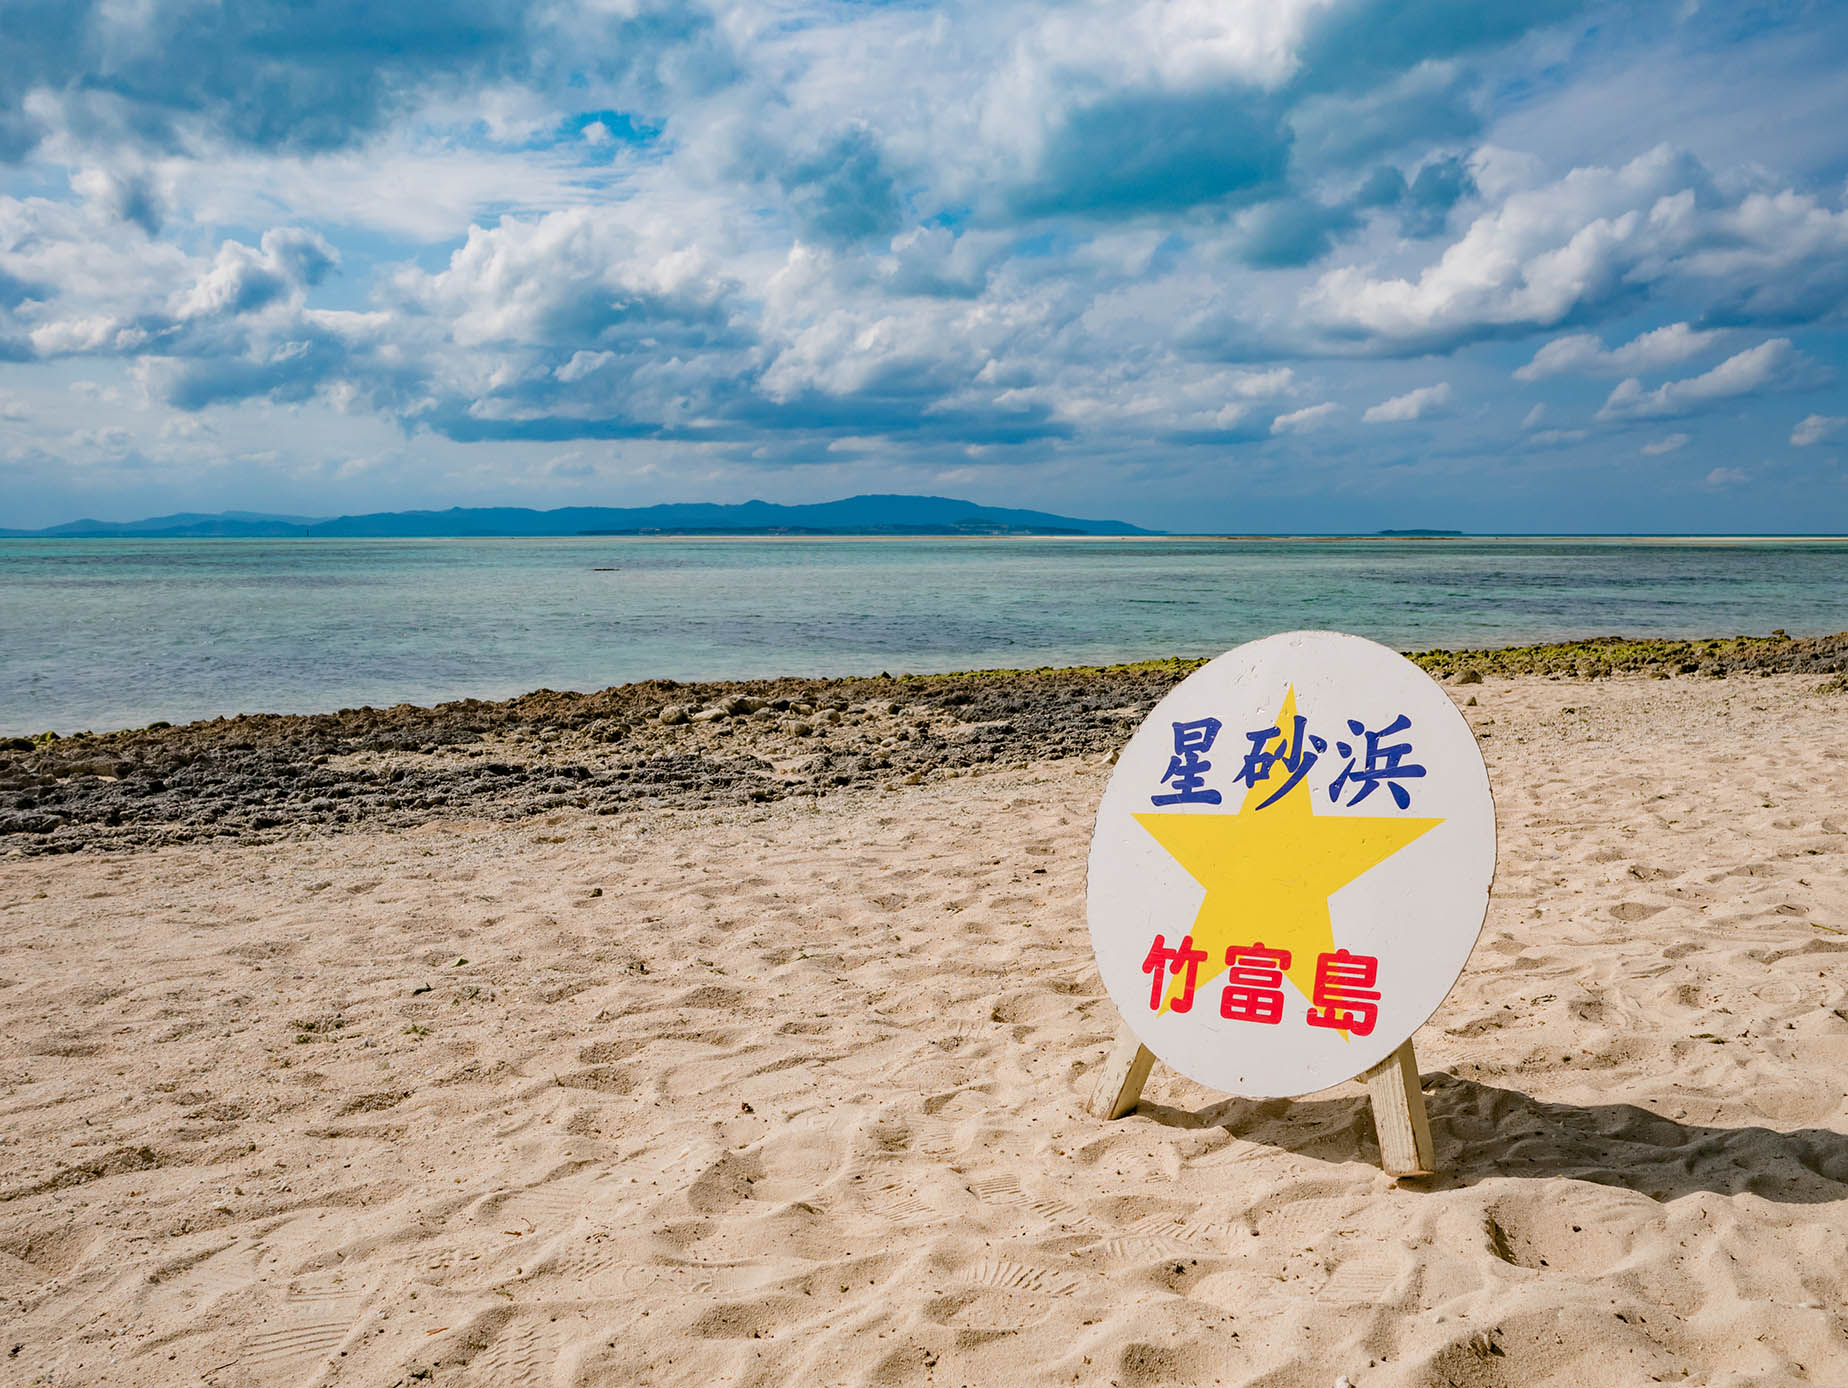 taketomi island kaiji beach